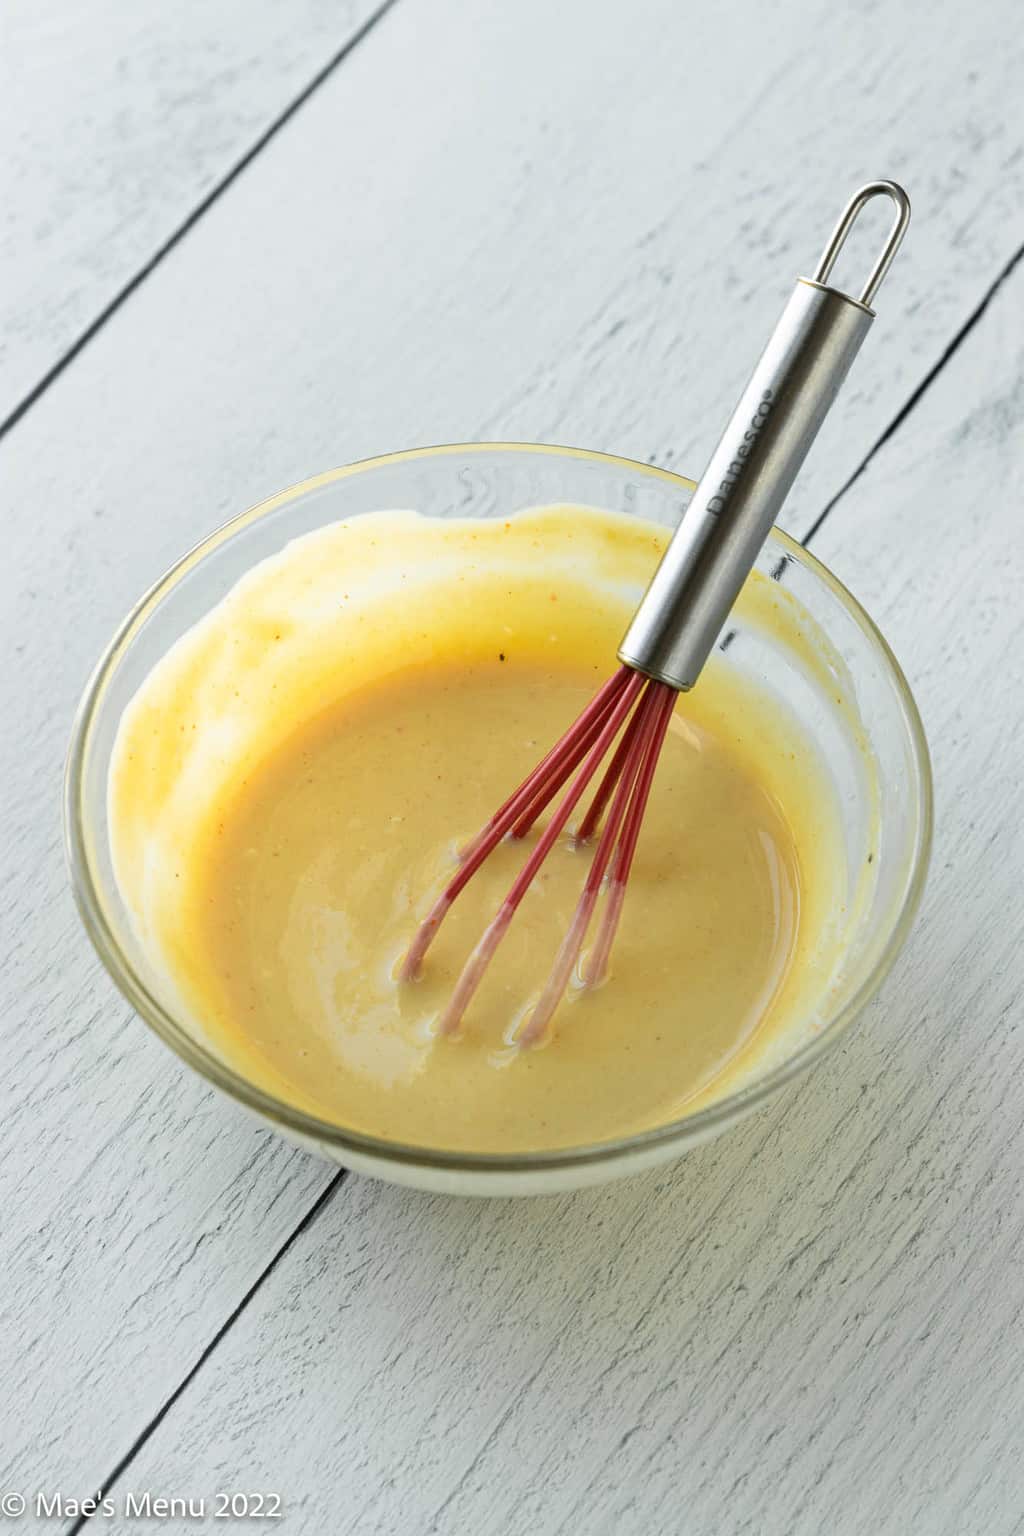 A small mixing bowl of honey mustard dip.